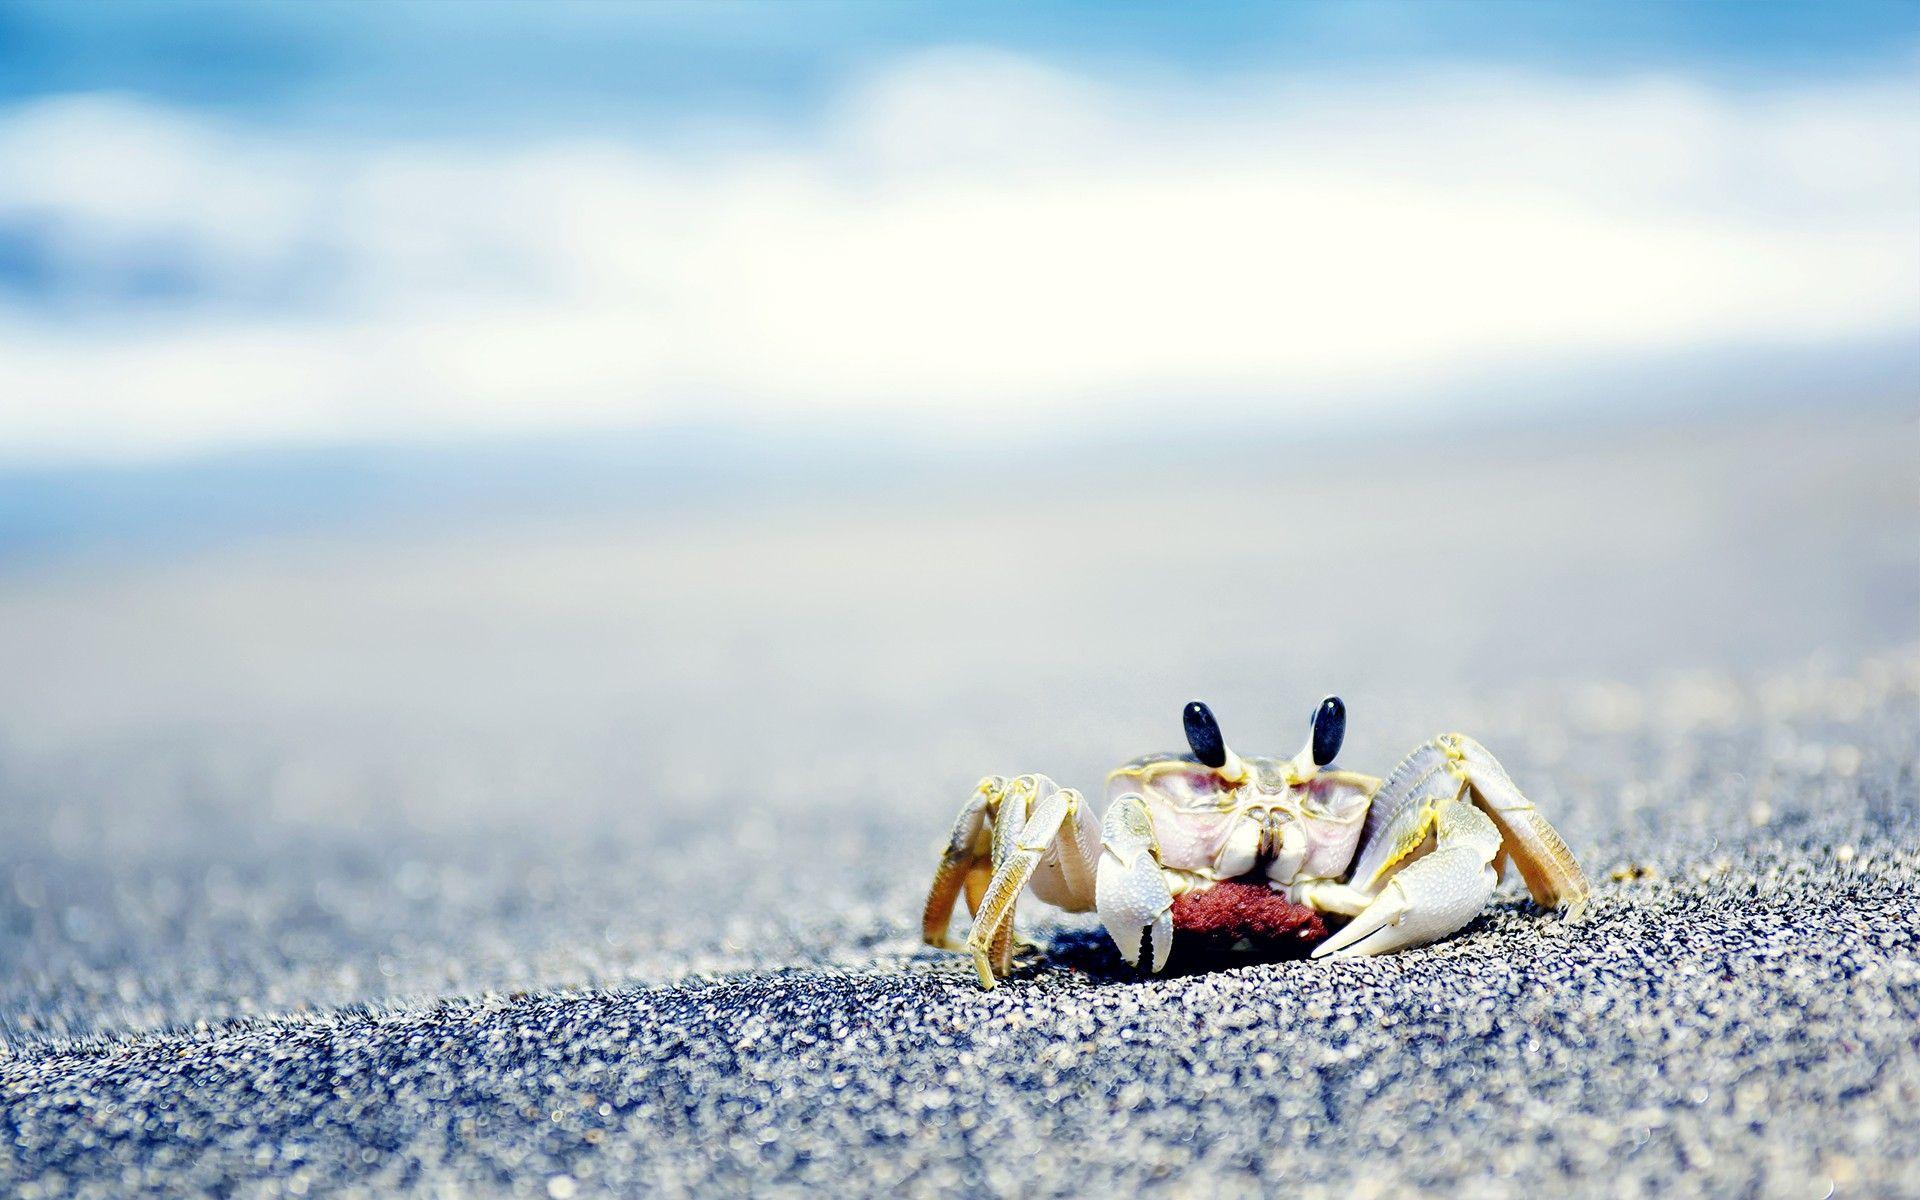 crabs, Sea, Sand, Crustaceans Wallpaper HD / Desktop and Mobile